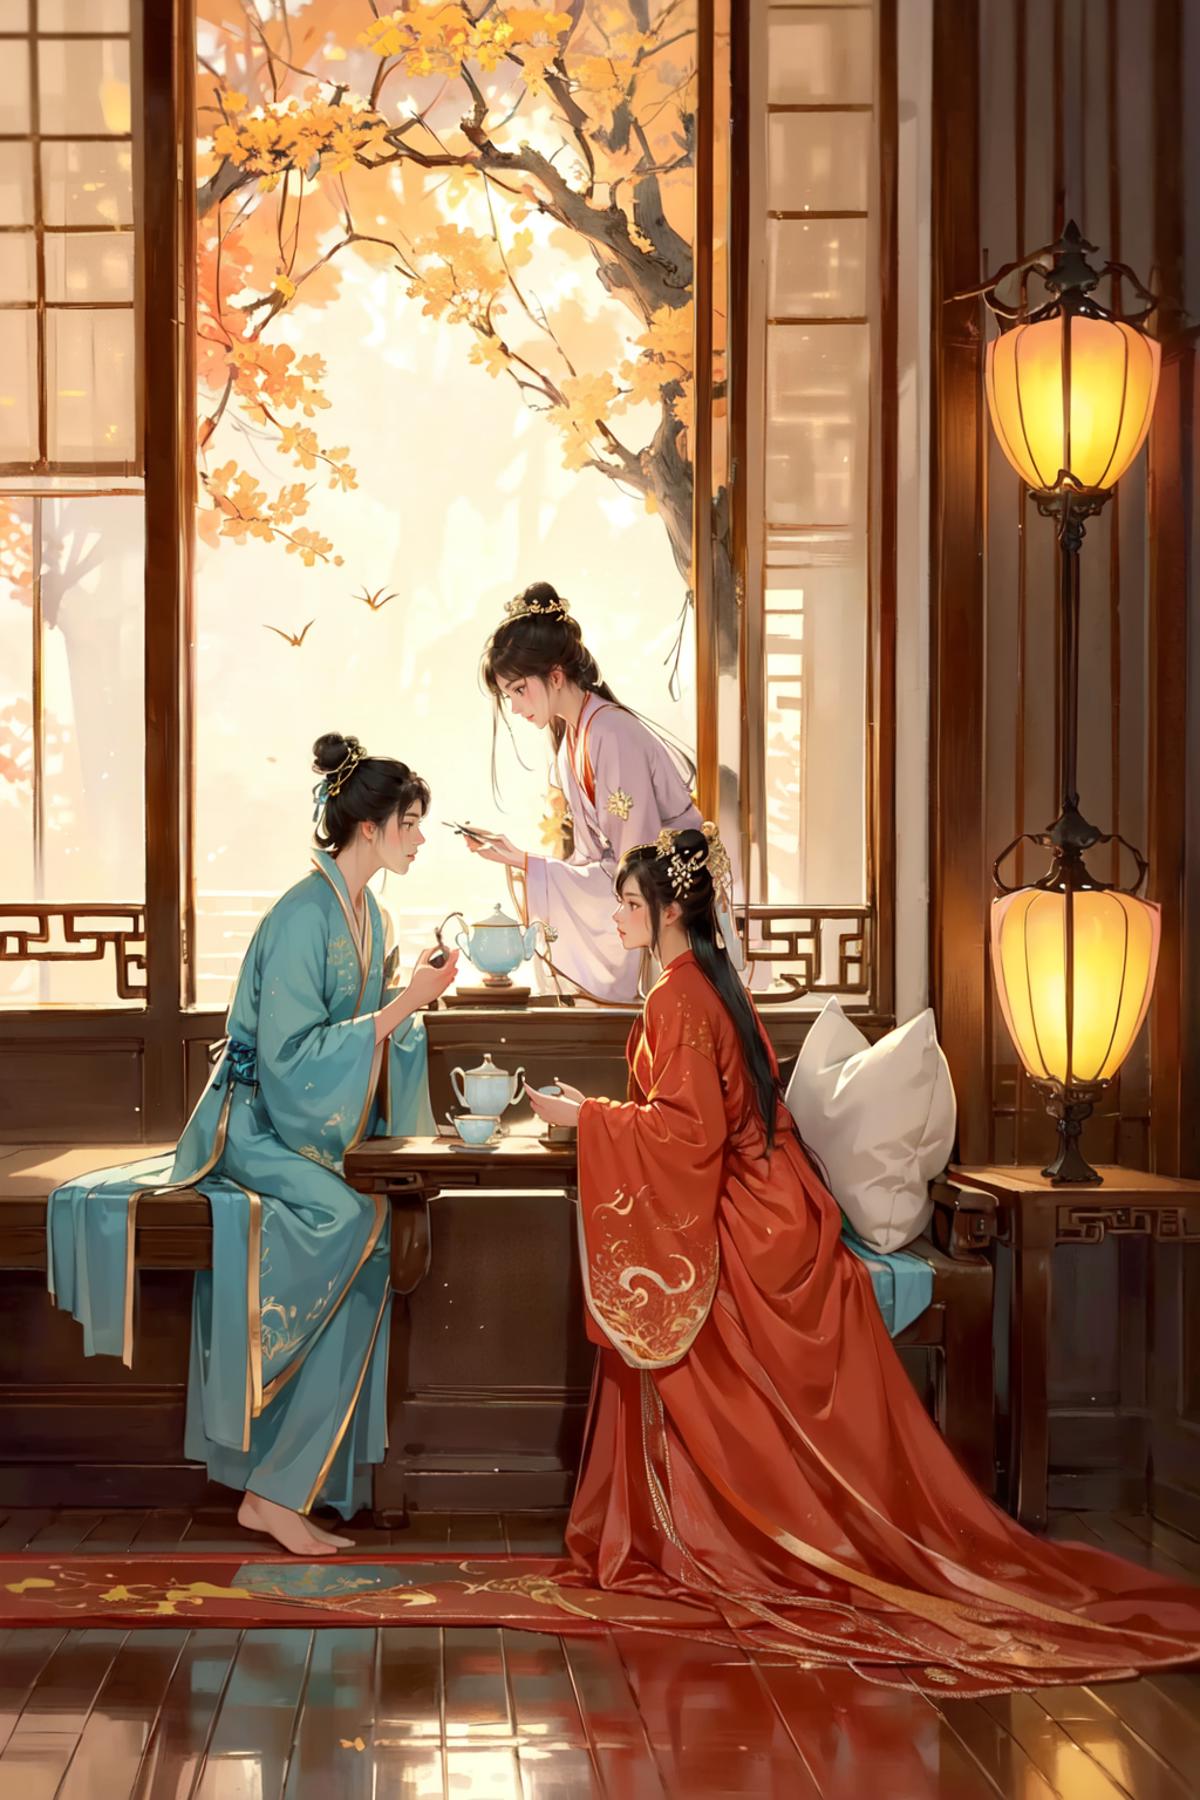 花间酒/Chinese watercolour style/Hanama wine Lora image by chosen